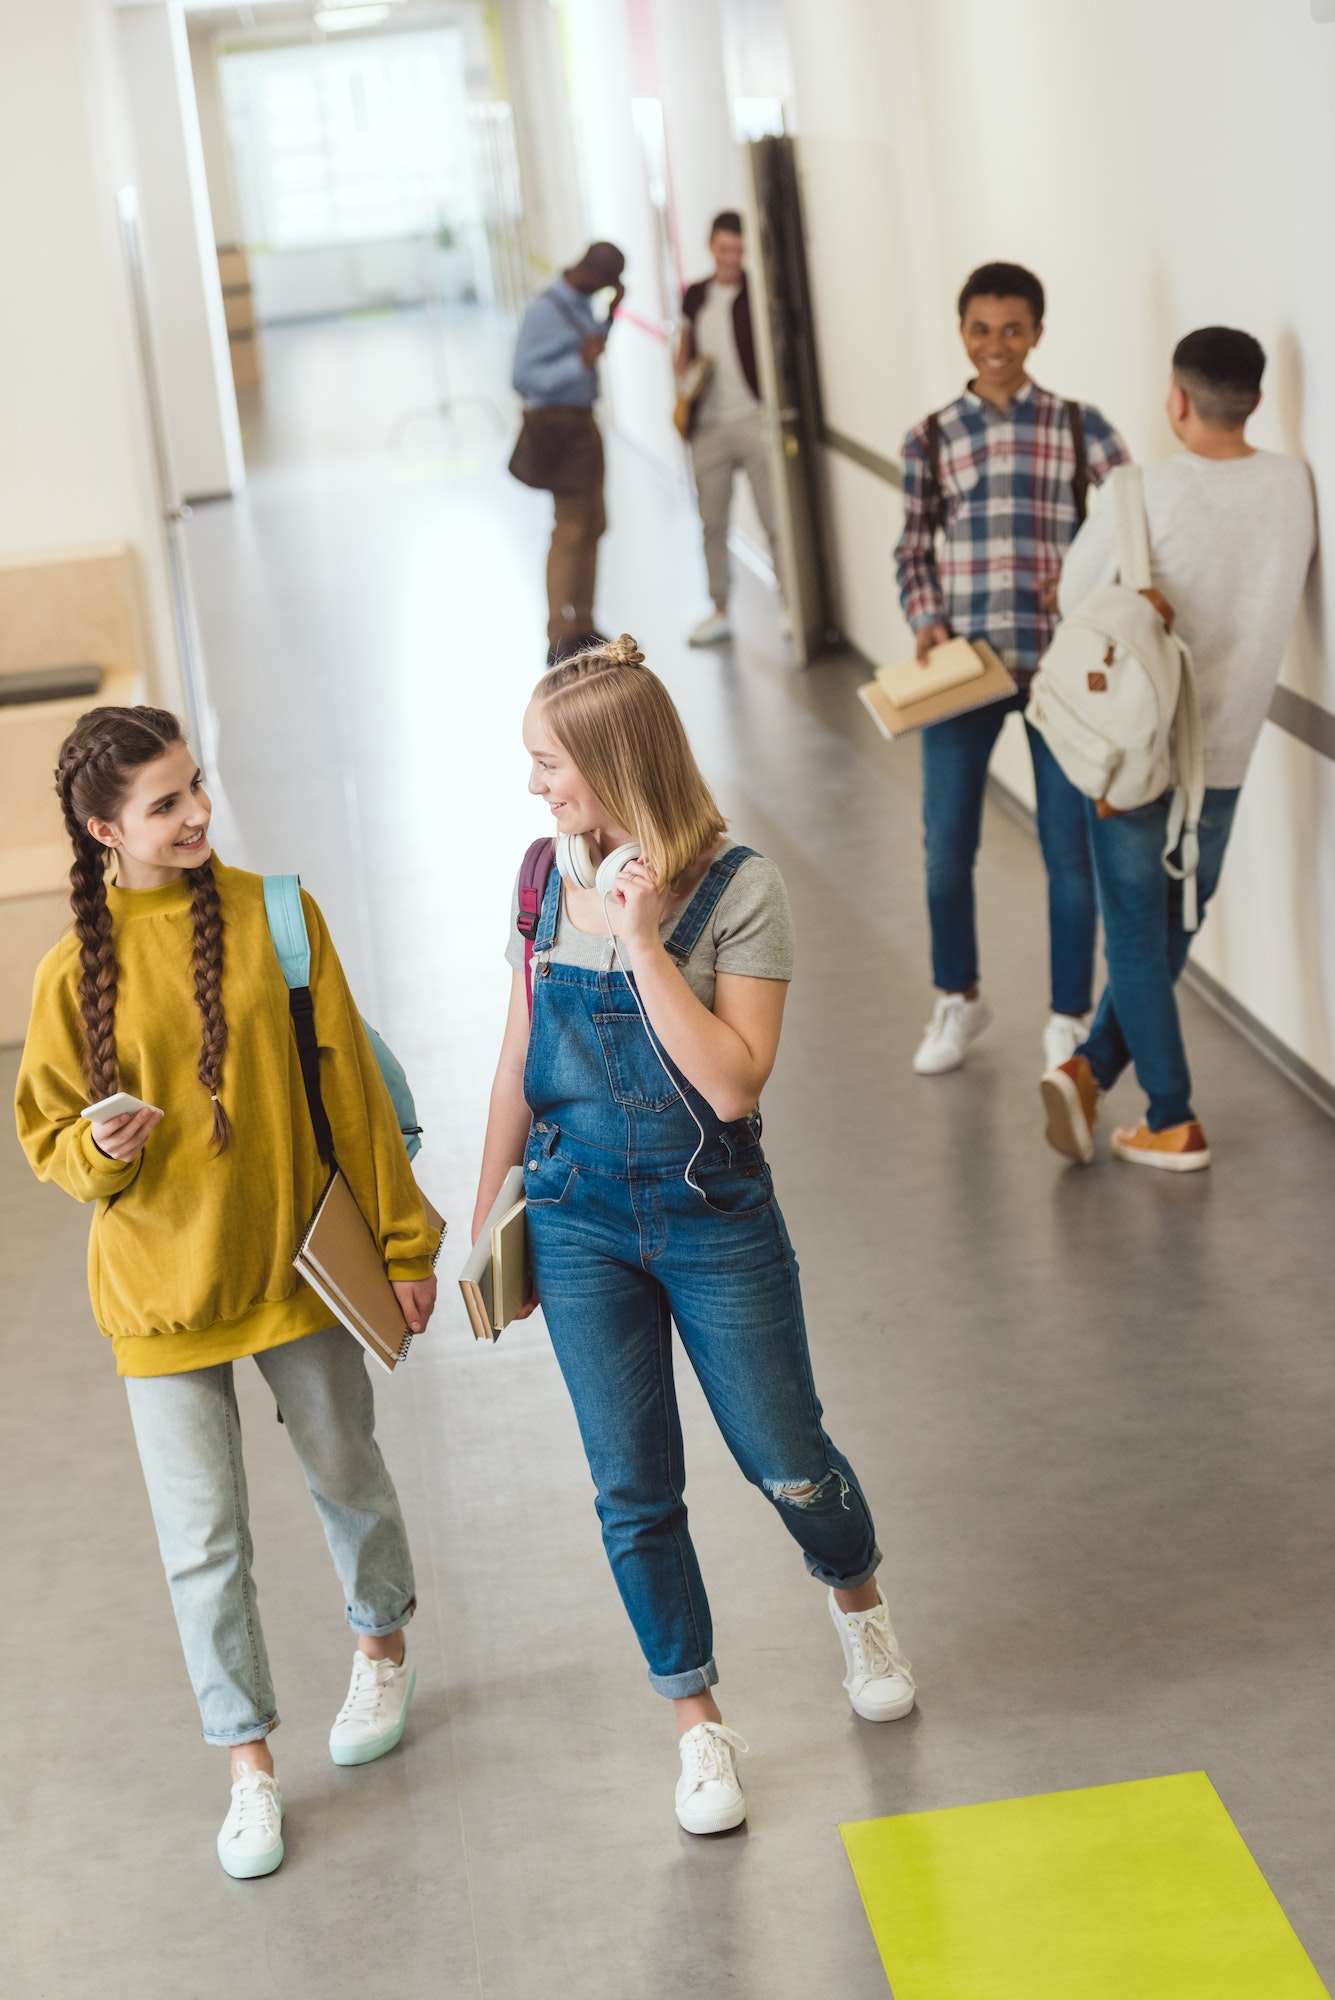 group of multiethnic high school students spending time at school corridor during break